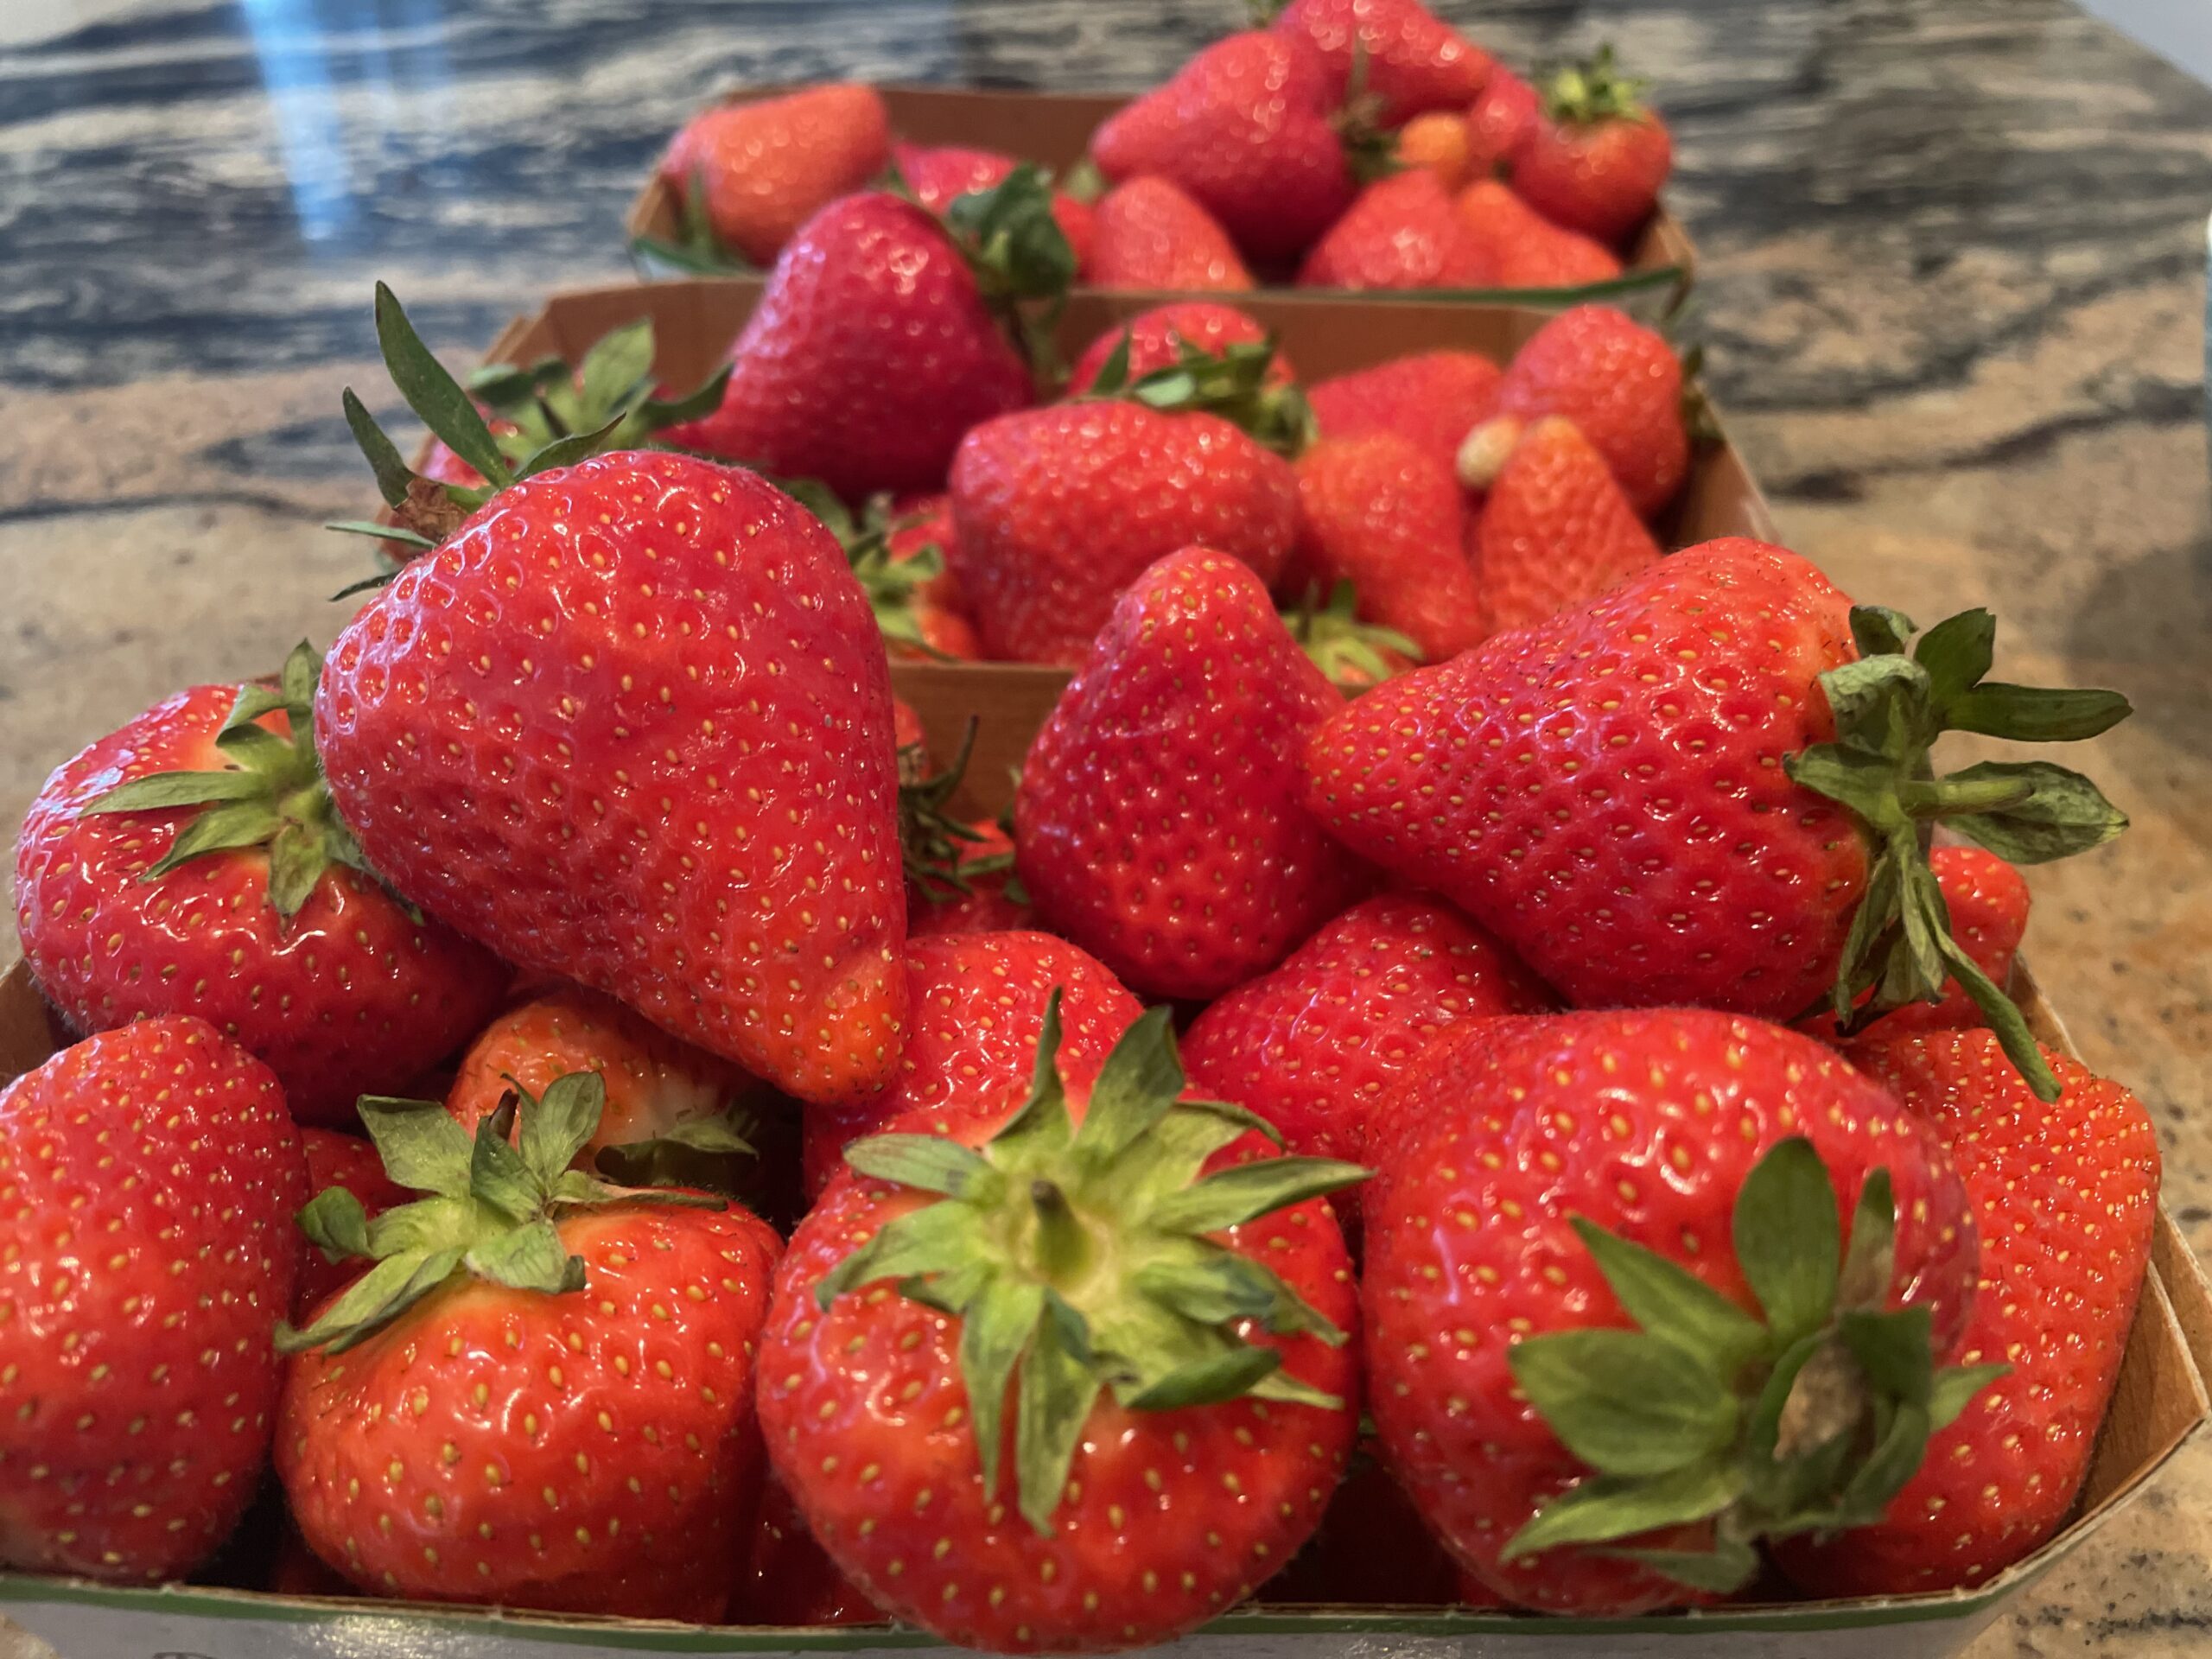 Erdbeeren für unsere Erdbeermarmelade